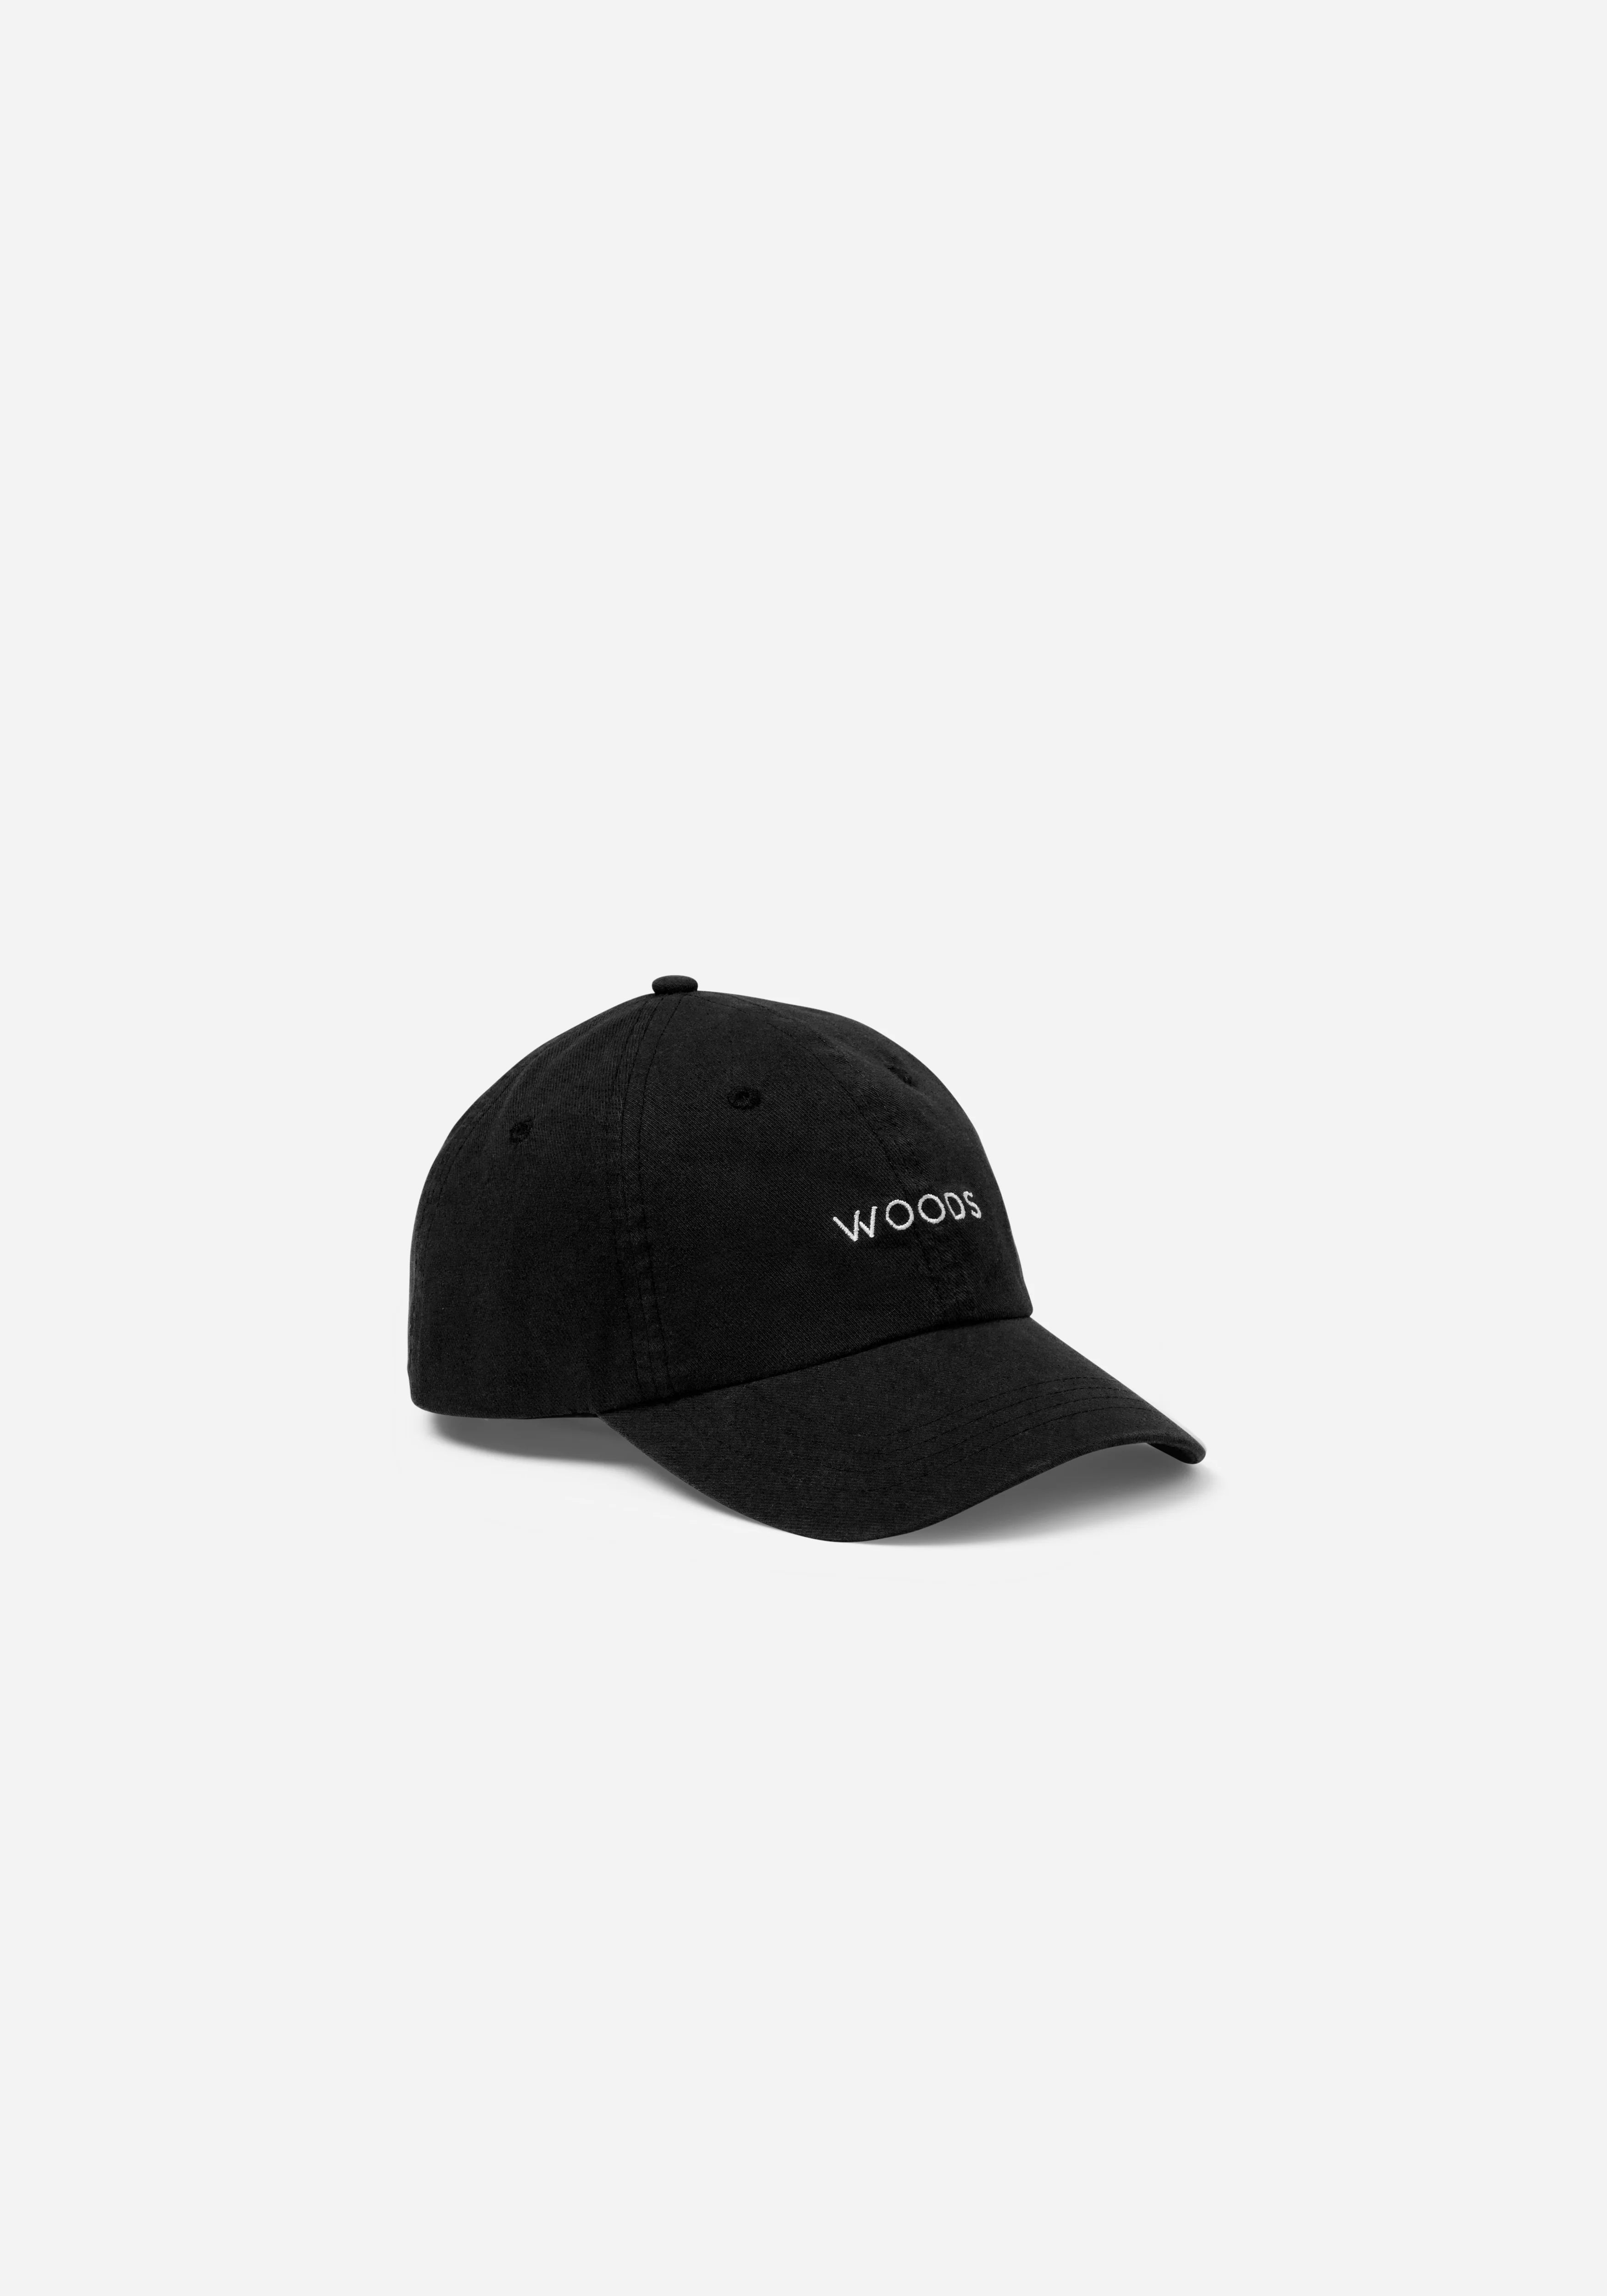 WOODS VINTAGE CAP | BLACK